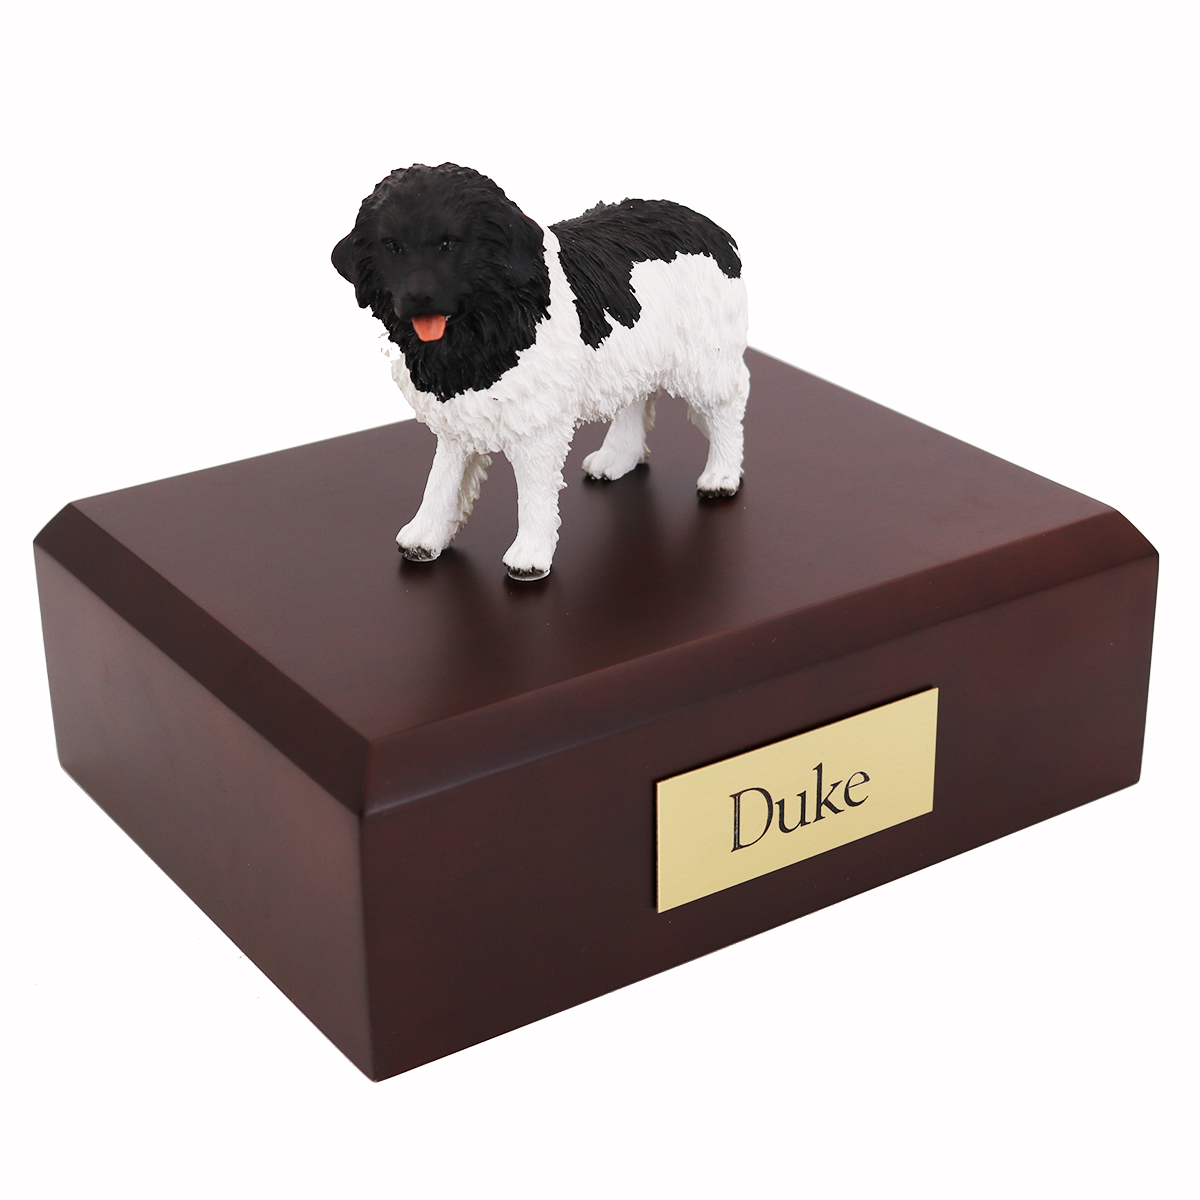 Dog, Landseer - Figurine Urn